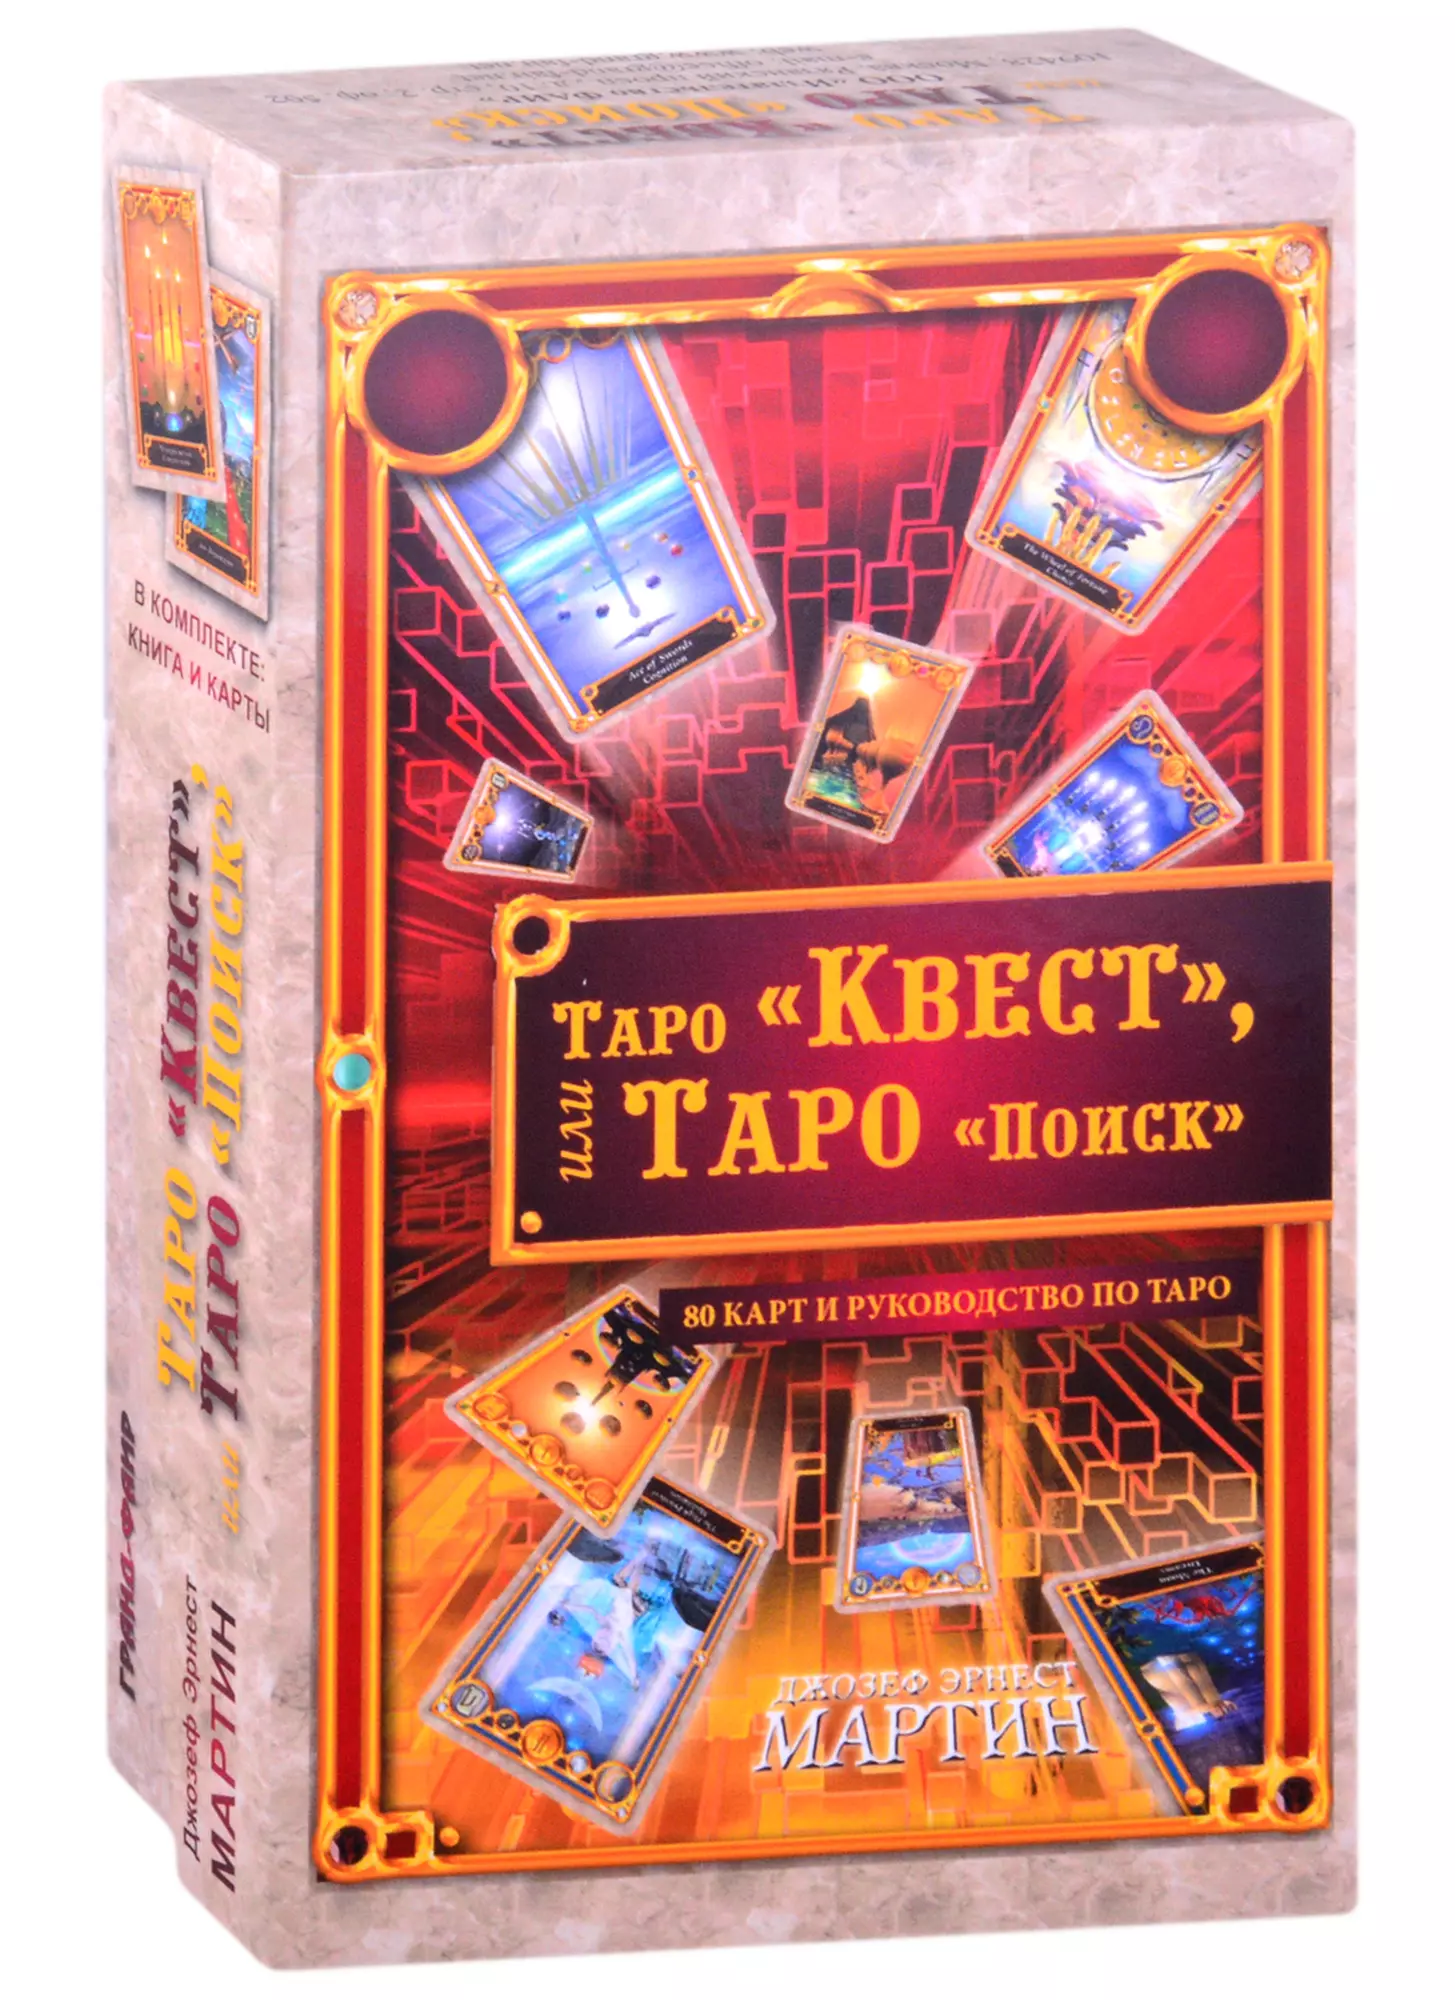 Таро Квест, или Таро Поиск (80 карт+ руководство) набор таро квест или таро поиск